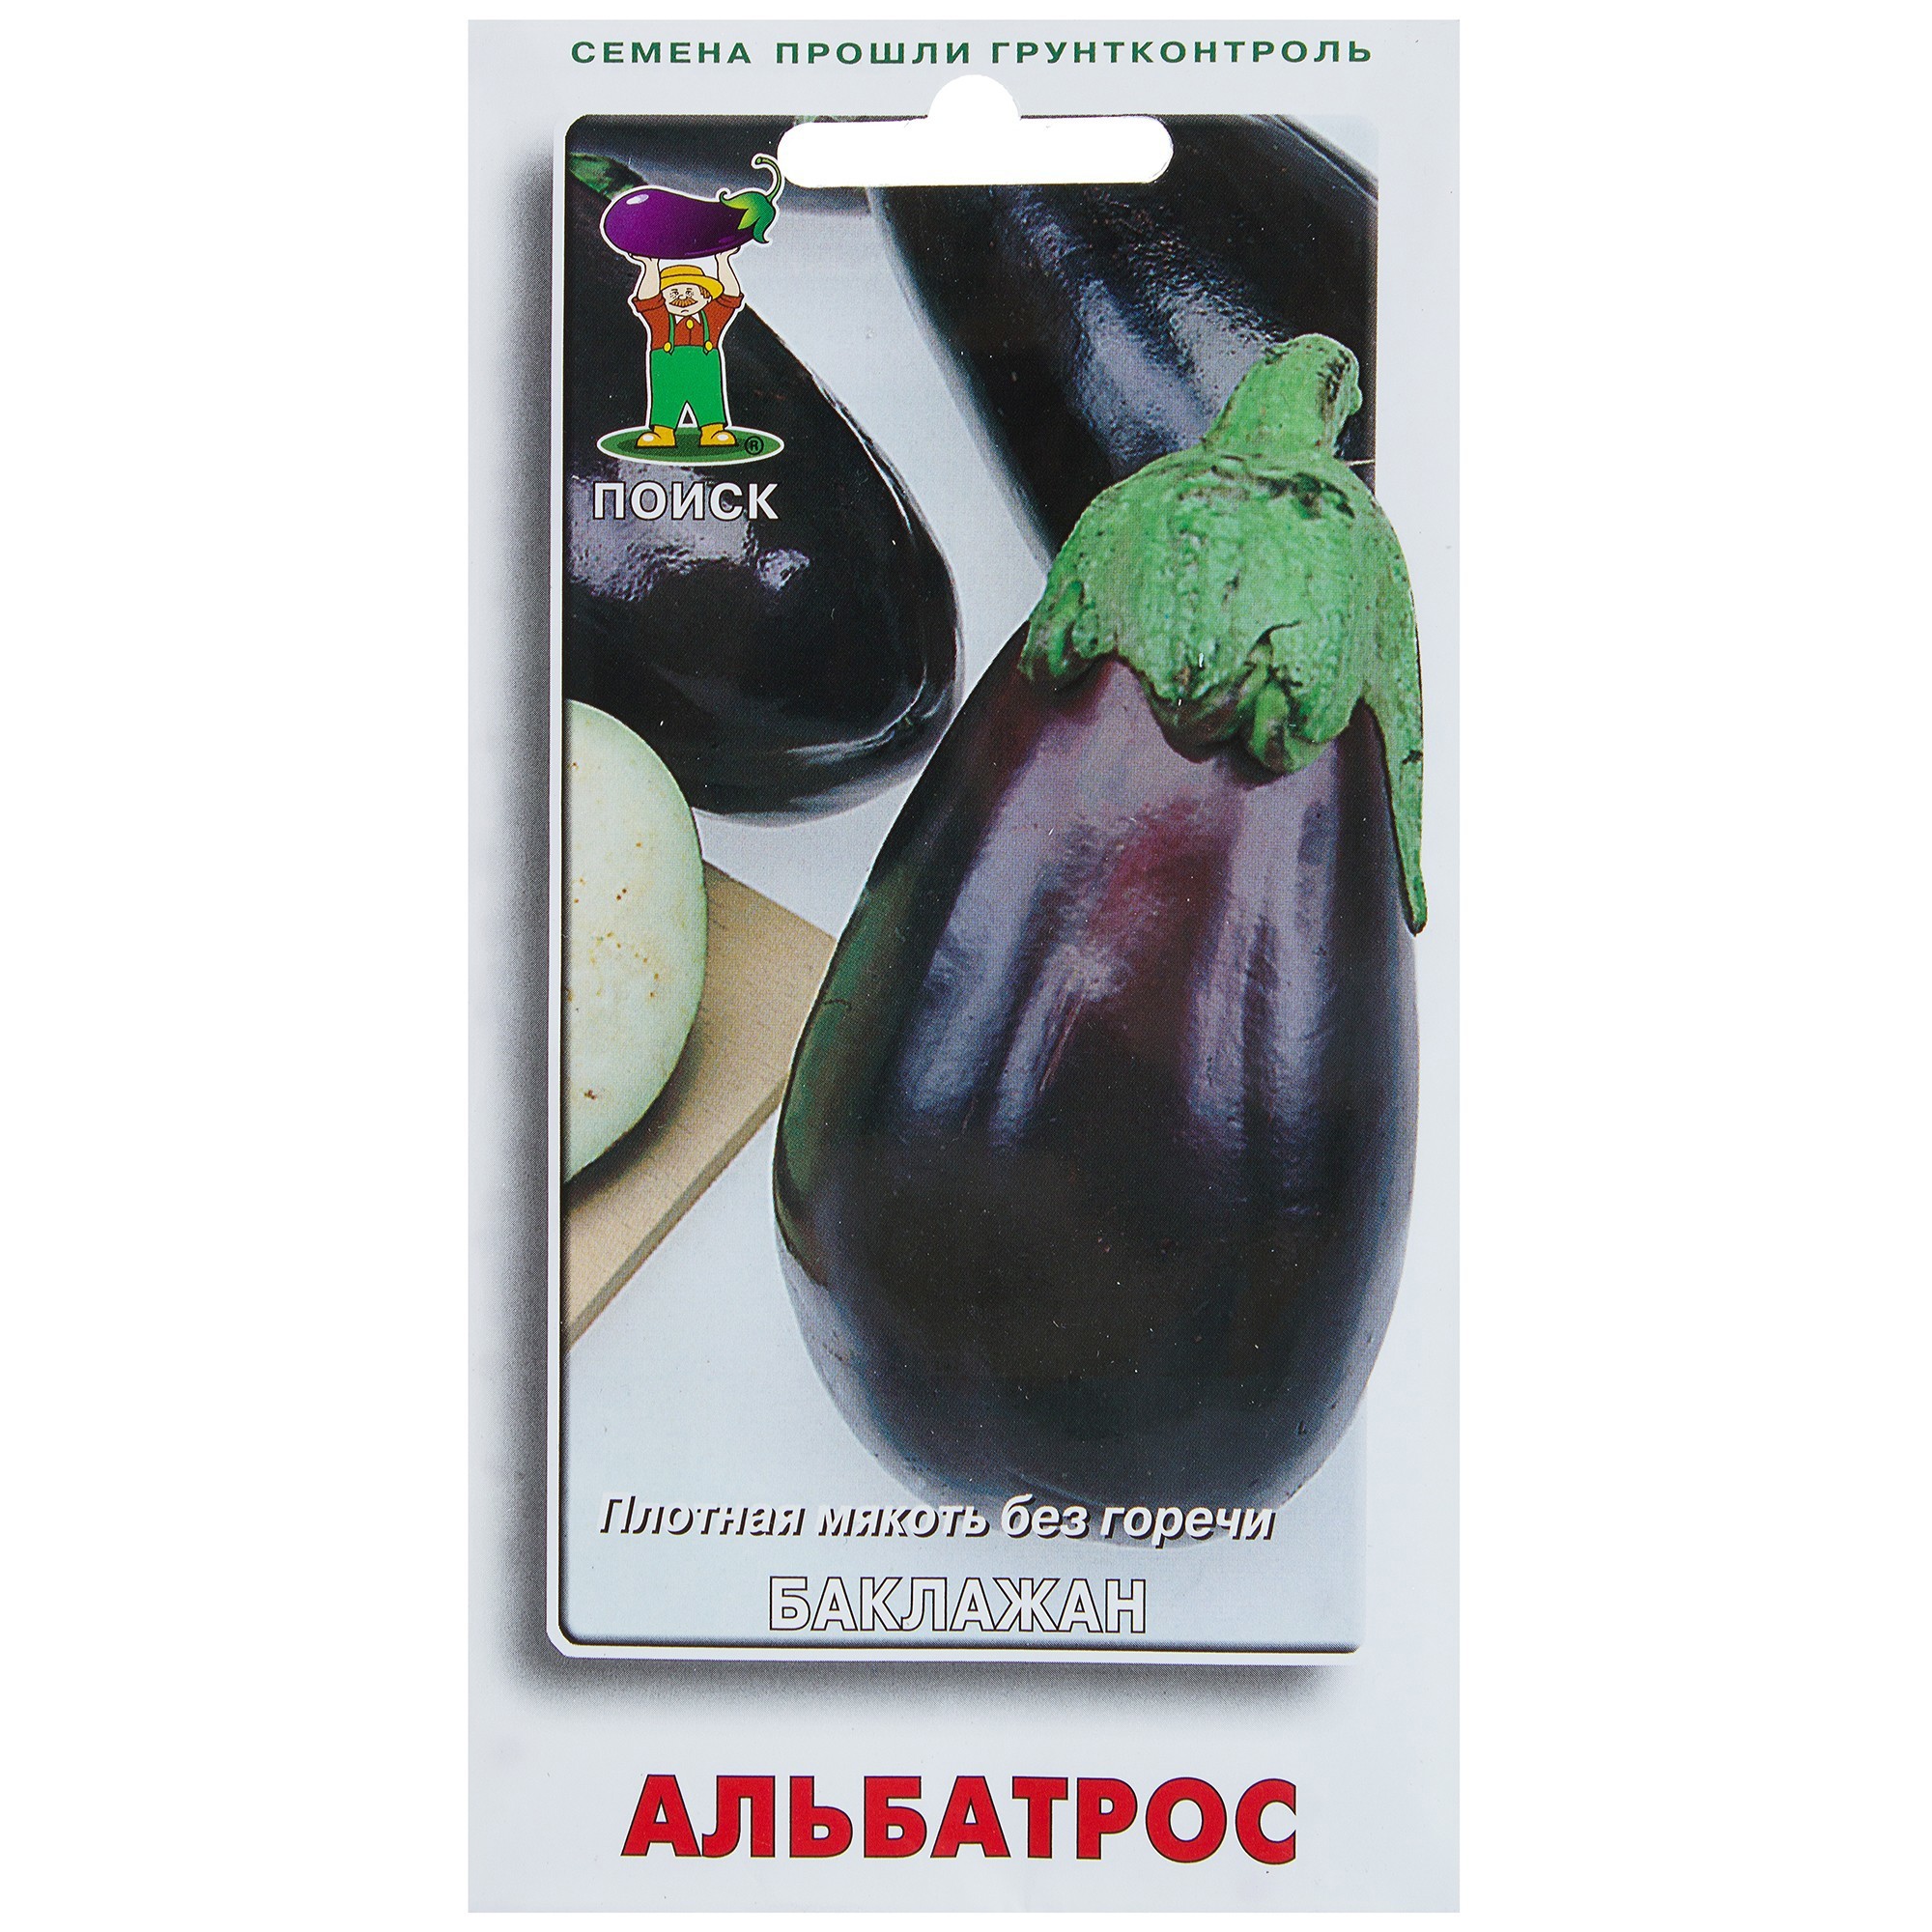 Семена Баклажан «Альбатрос» в Хабаровске – купить по низкой цене винтернет-магазине Леруа Мерлен